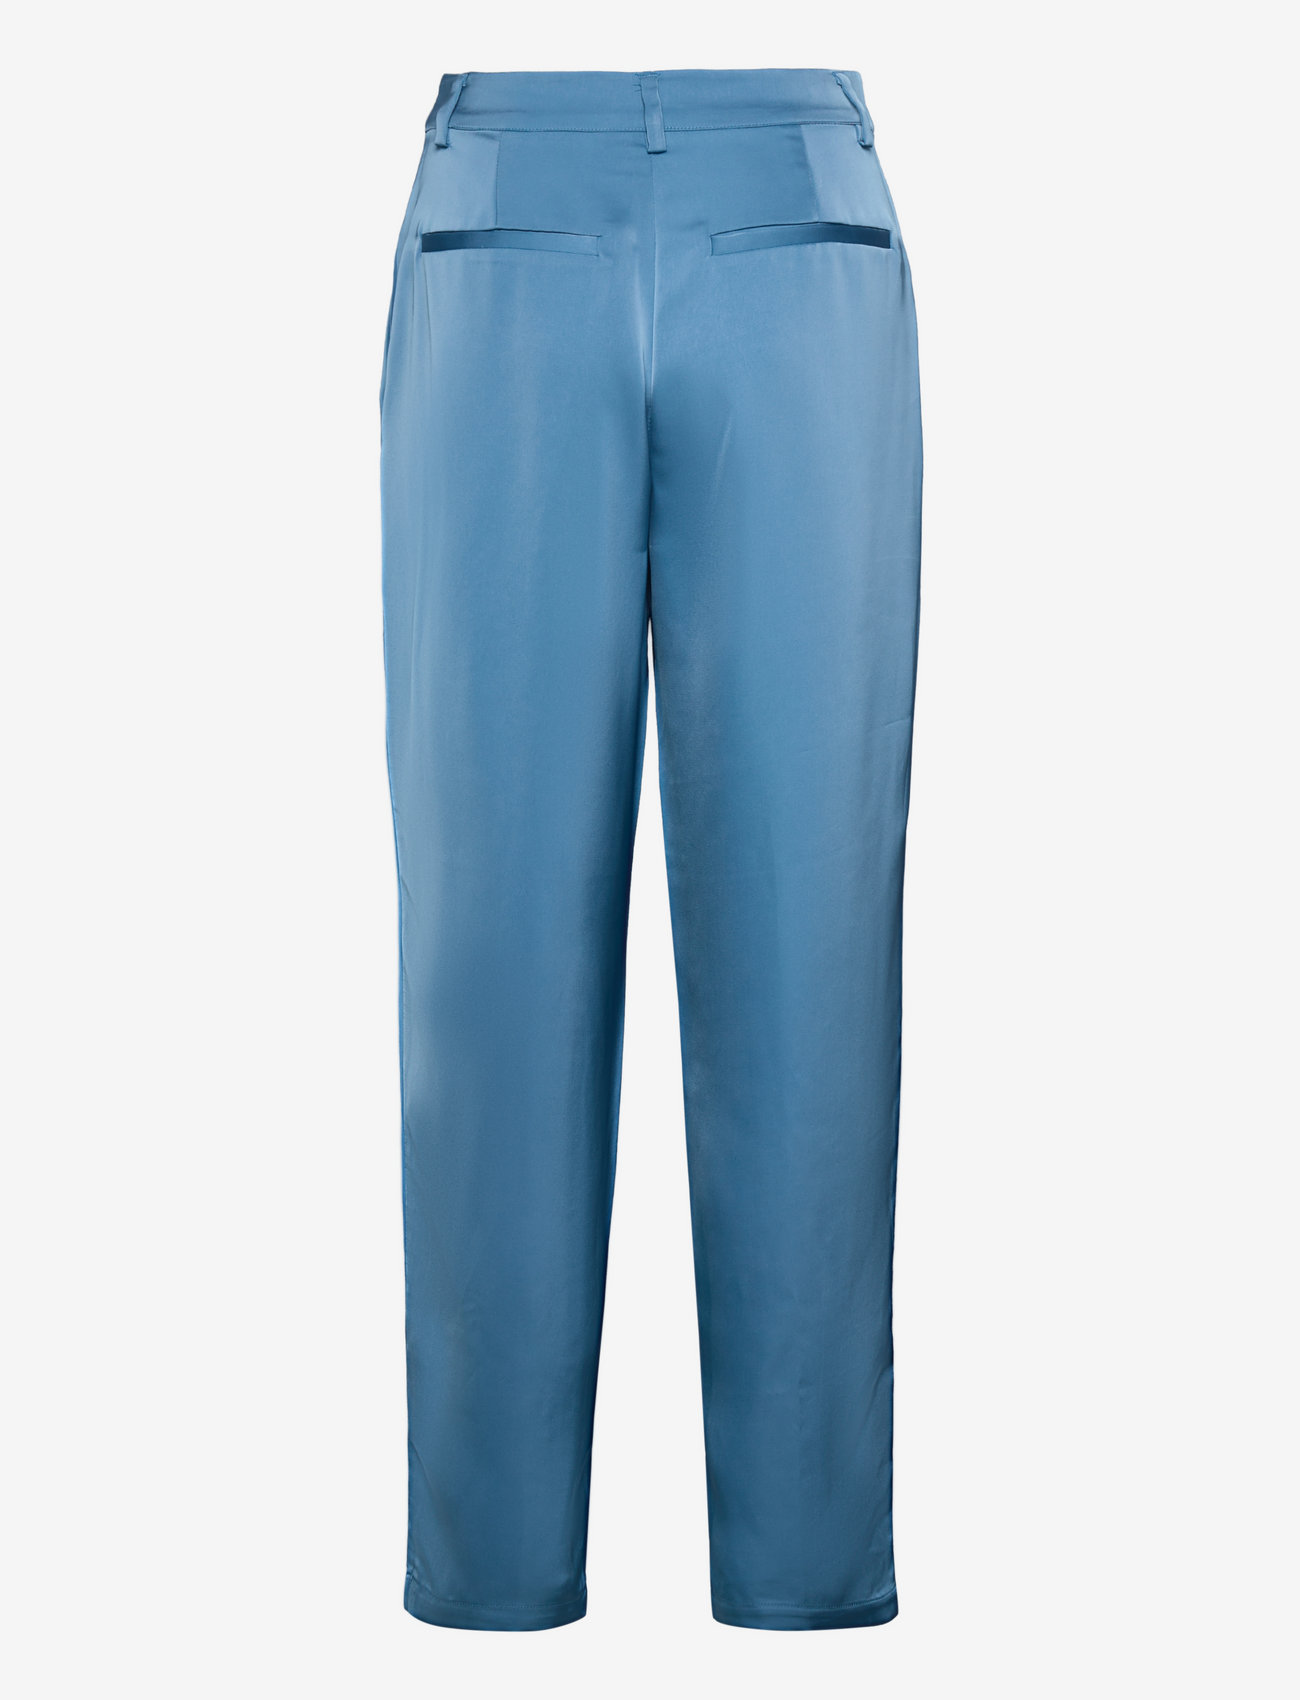 bzr - Satulla Dollar pants - formell - ocean blue - 1